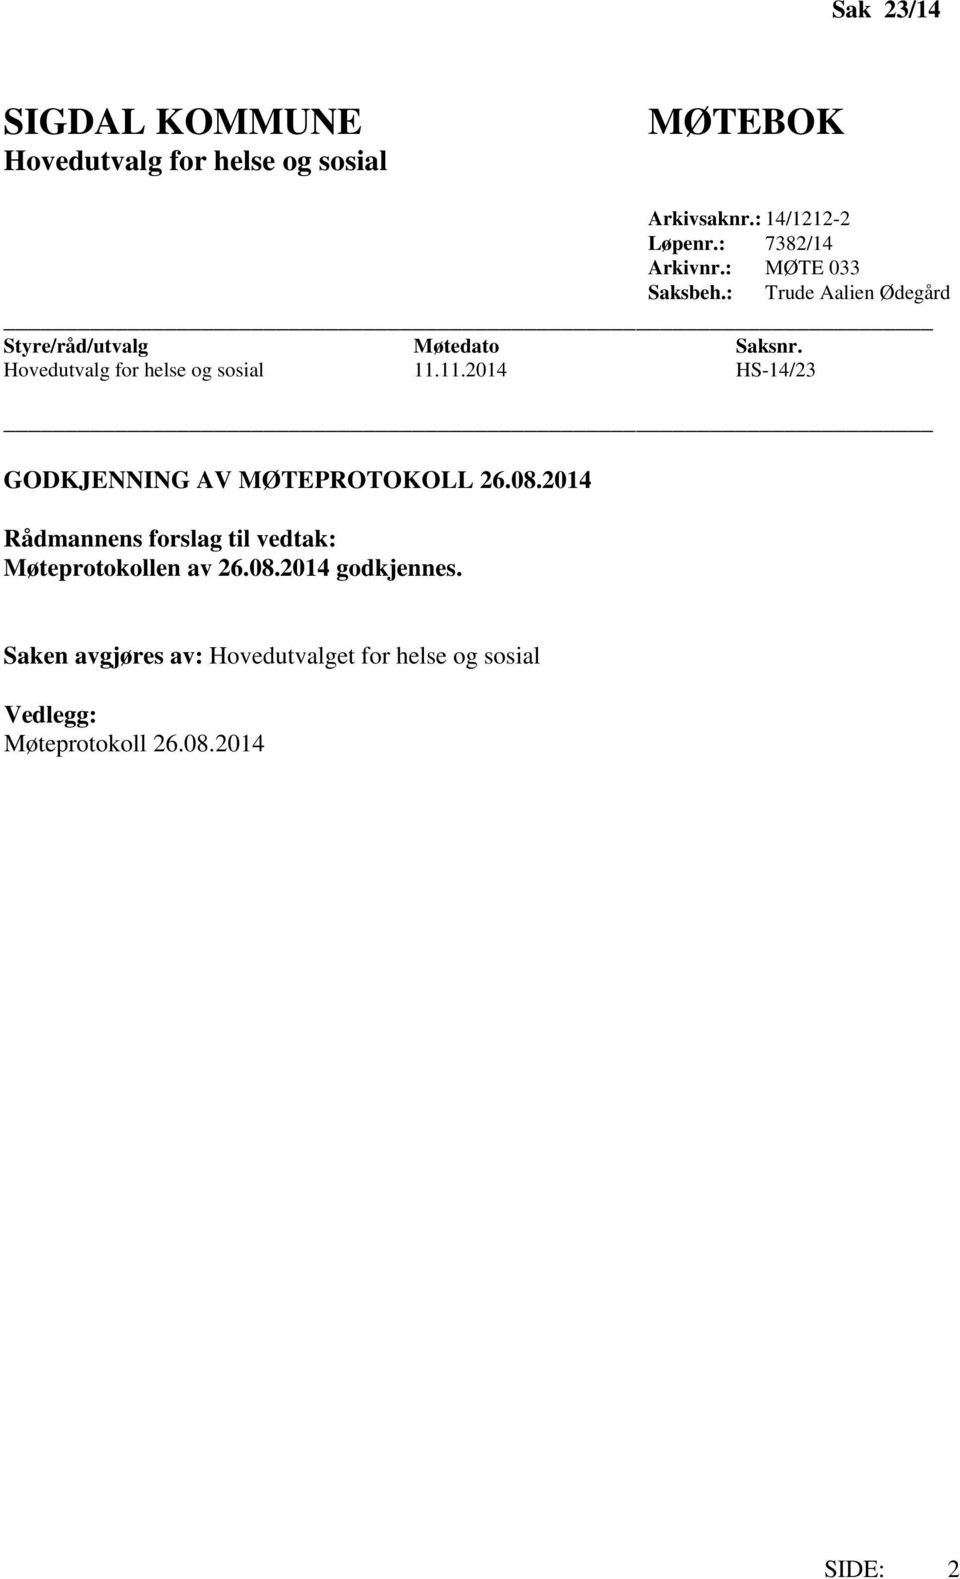 Hovedutvalg for helse og sosial 11.11.2014 HS-14/23 GODKJENNING AV MØTEPROTOKOLL 26.08.